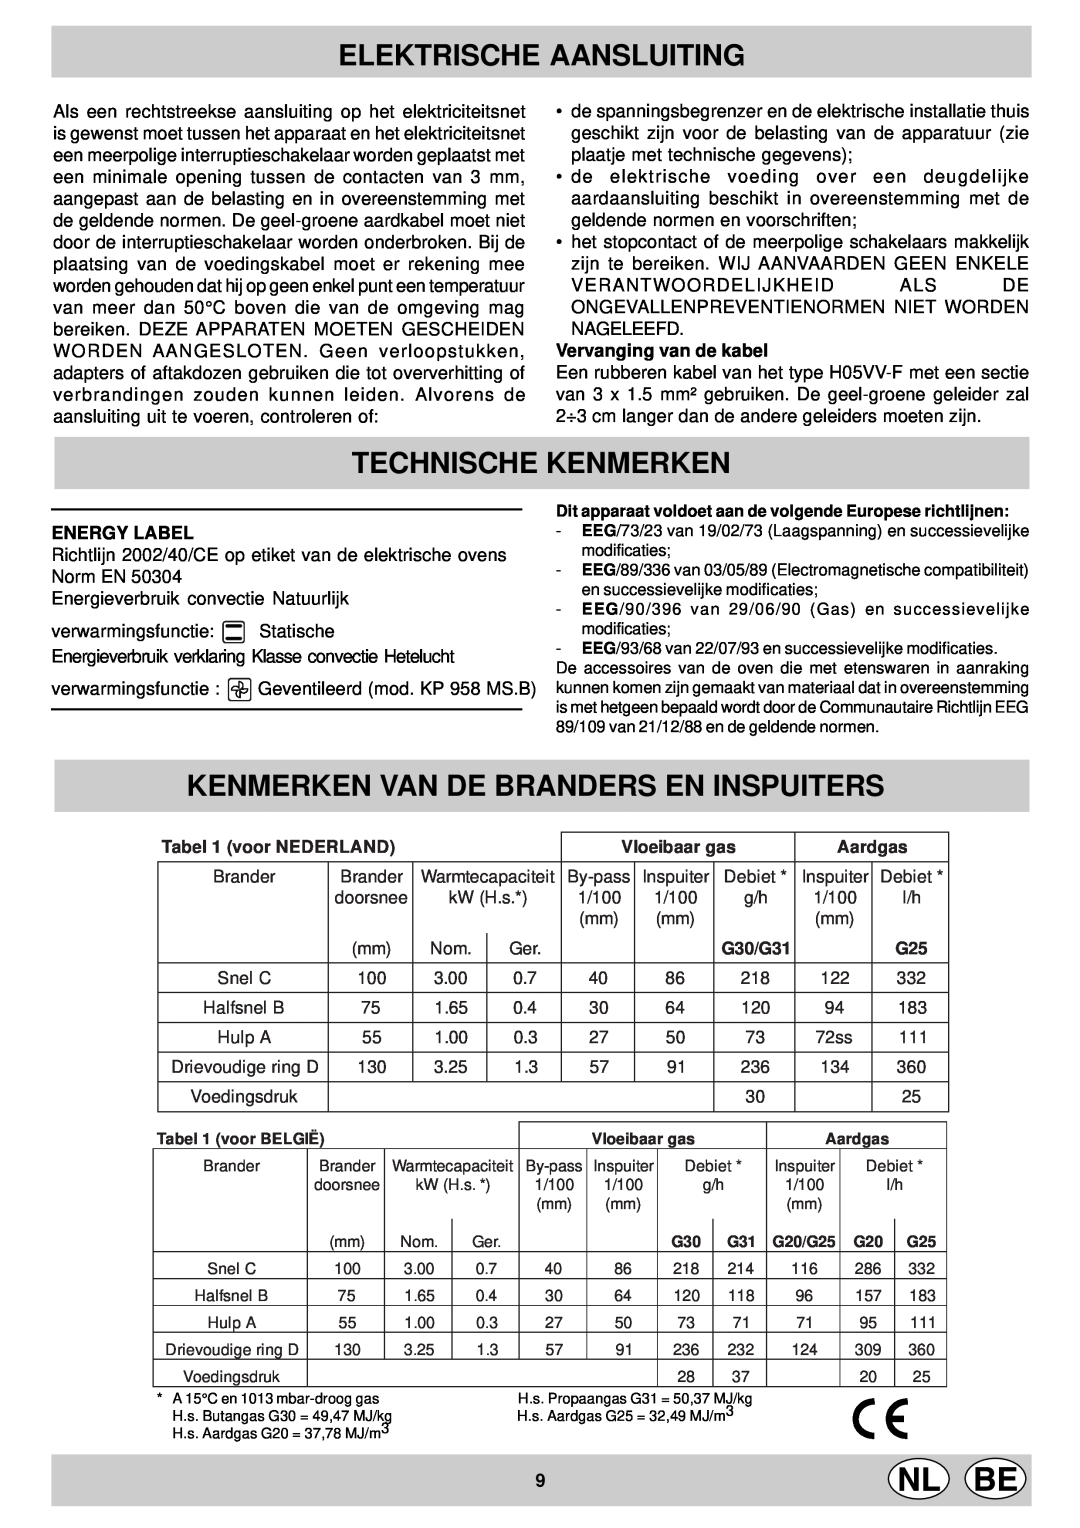 Indesit KP 9507 EB Technische Kenmerken, Kenmerken Van De Branders En Inspuiters, Elektrische Aansluiting, Energy Label 